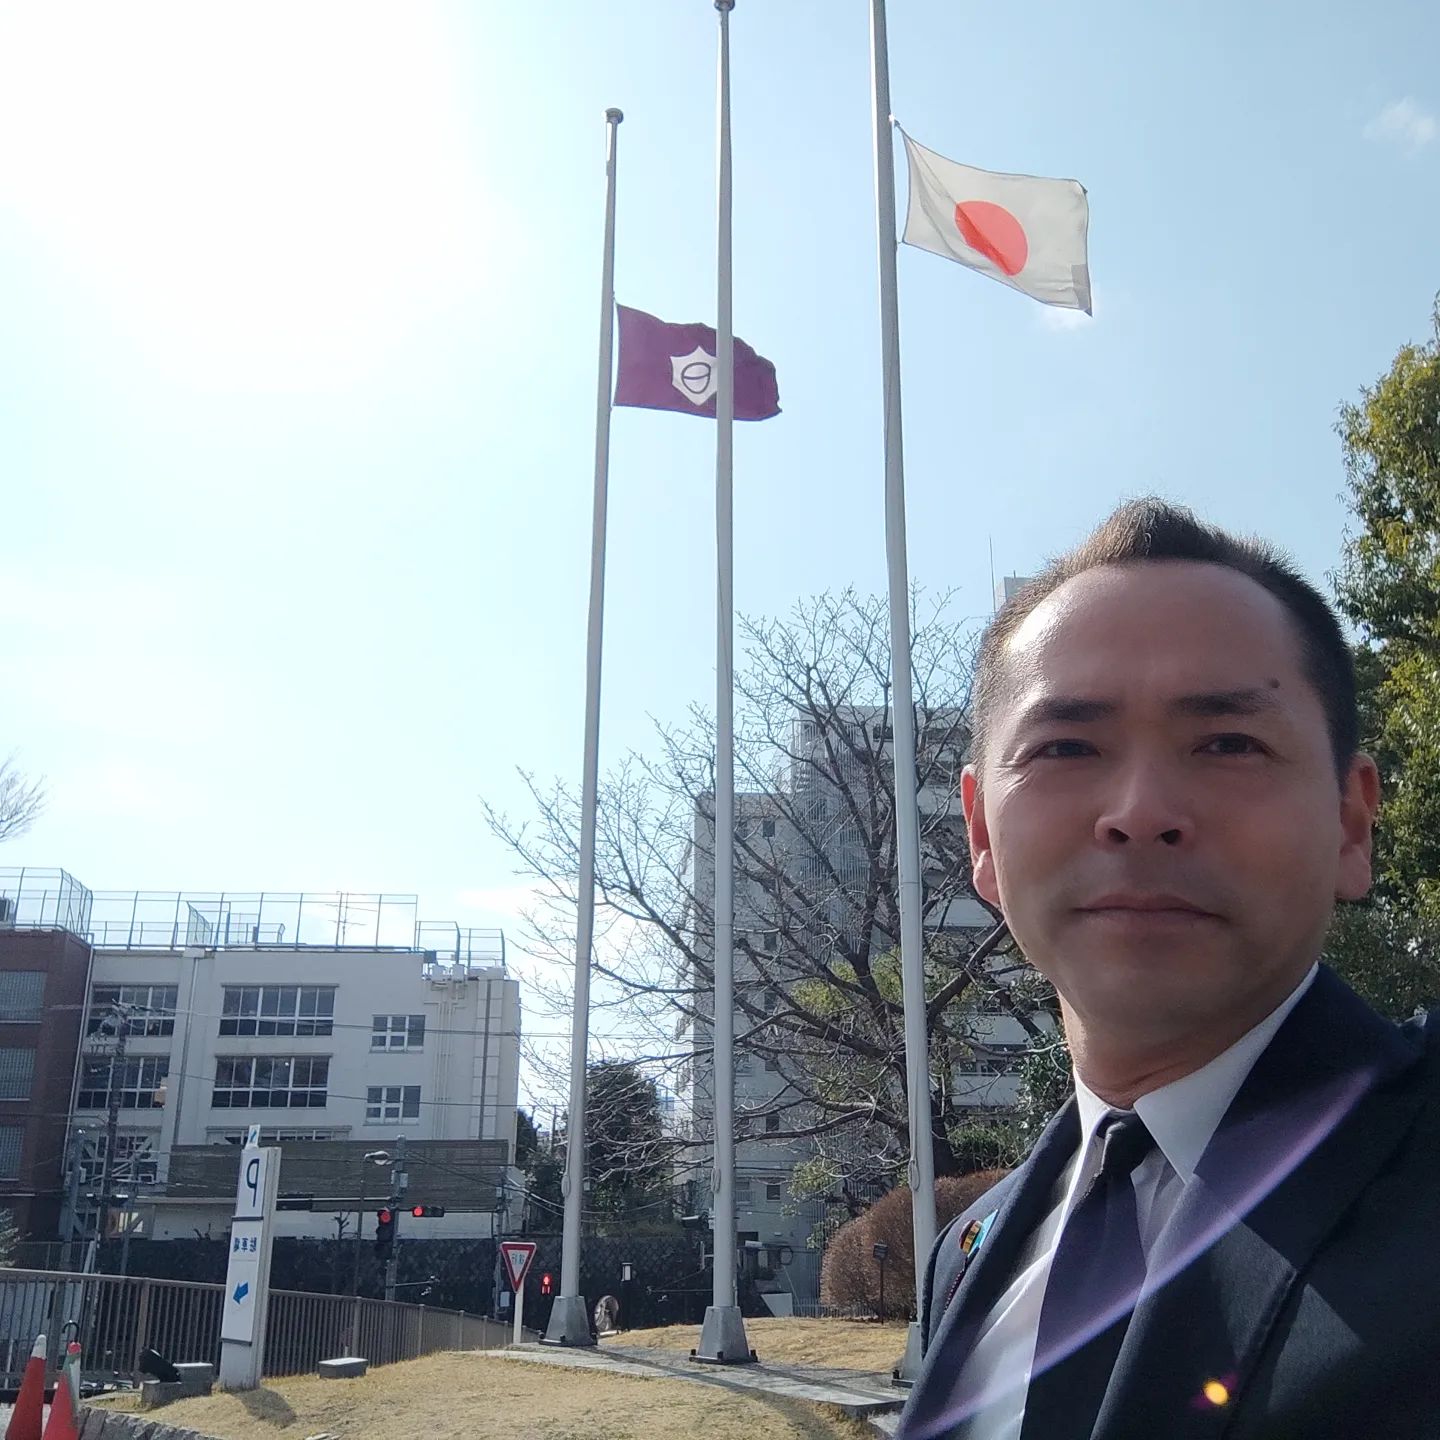 [ 【追悼 東京大空襲（東京都平和の日）】78年前の今日、東京大空襲がありました。多くの目黒区民もその犠牲者となりました。78年後の今日、はじめて区総合庁舎に半旗が揚がり、議会に弔旗が揚がります。14時には庁舎・議会でも黙とうが行われます。　「自然災害や、大きな歴史的な大義の中で、不特定多数の目黒区民が不幸にも犠牲になった事象の追悼の象徴としては、我々基礎自治体たる行政・議会が率先して、この場に今暮らしている区民に対して、その歴史的意義を伝え、将来にわたって啓発してゆかなければならない。今を生きる、公たる我々が率先してやらないで、誰がそれを行うことができるのか？歴史の1ページとして眠らせて仕舞いかねないロスは、本当に正しい判断なのであろうか？」（岸大介議会議事録より）　半旗・弔旗掲揚は1年かけて、全力でやりました。時代もありました。タイミングもありました。役職者の理解もありました。様々なサポートもありました。何より、支援してくださる方々がいらっしゃった。　財政も、予算も決算も関係ない。議事・議案とは程遠い。だけど、とても重いものものがそこには在りました。　本日、1つの想いが結実しました。今は亡きあの時代を生きぬいた祖父母達と、今を生きる区民の皆様への報告マデ。令和5年3月10日目黒区議会議員　岸大介 ]